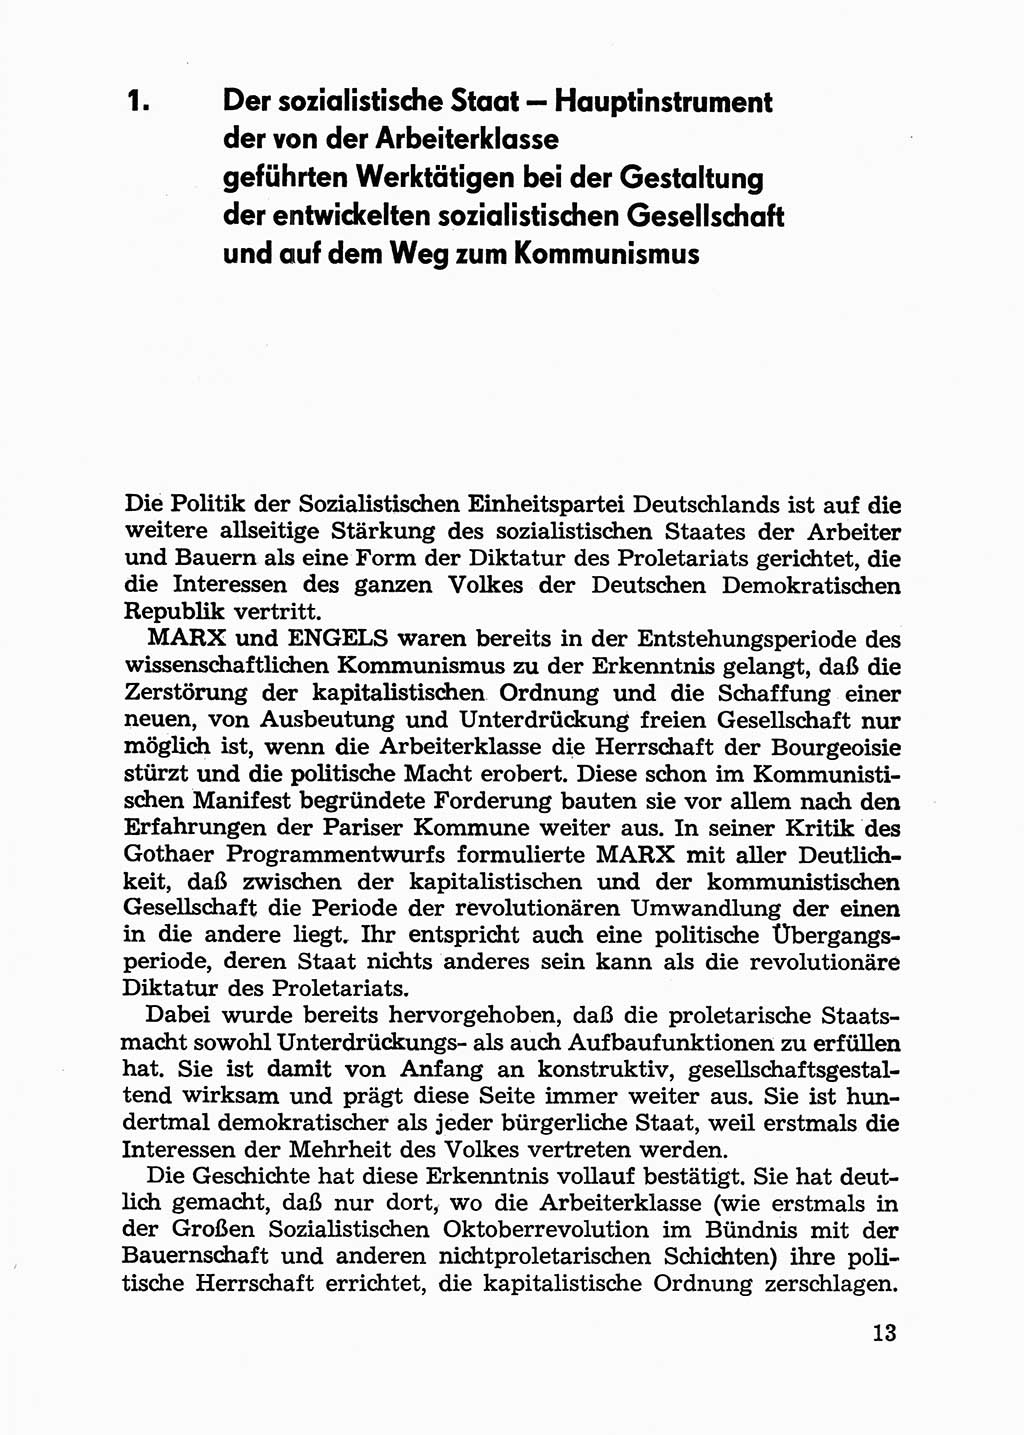 Handbuch für Betriebsangehörige, Abteilung Strafvollzug (SV) [Ministerium des Innern (MdI) Deutsche Demokratische Republik (DDR)] 1981, Seite 13 (Hb. BA Abt. SV MdI DDR 1981, S. 13)